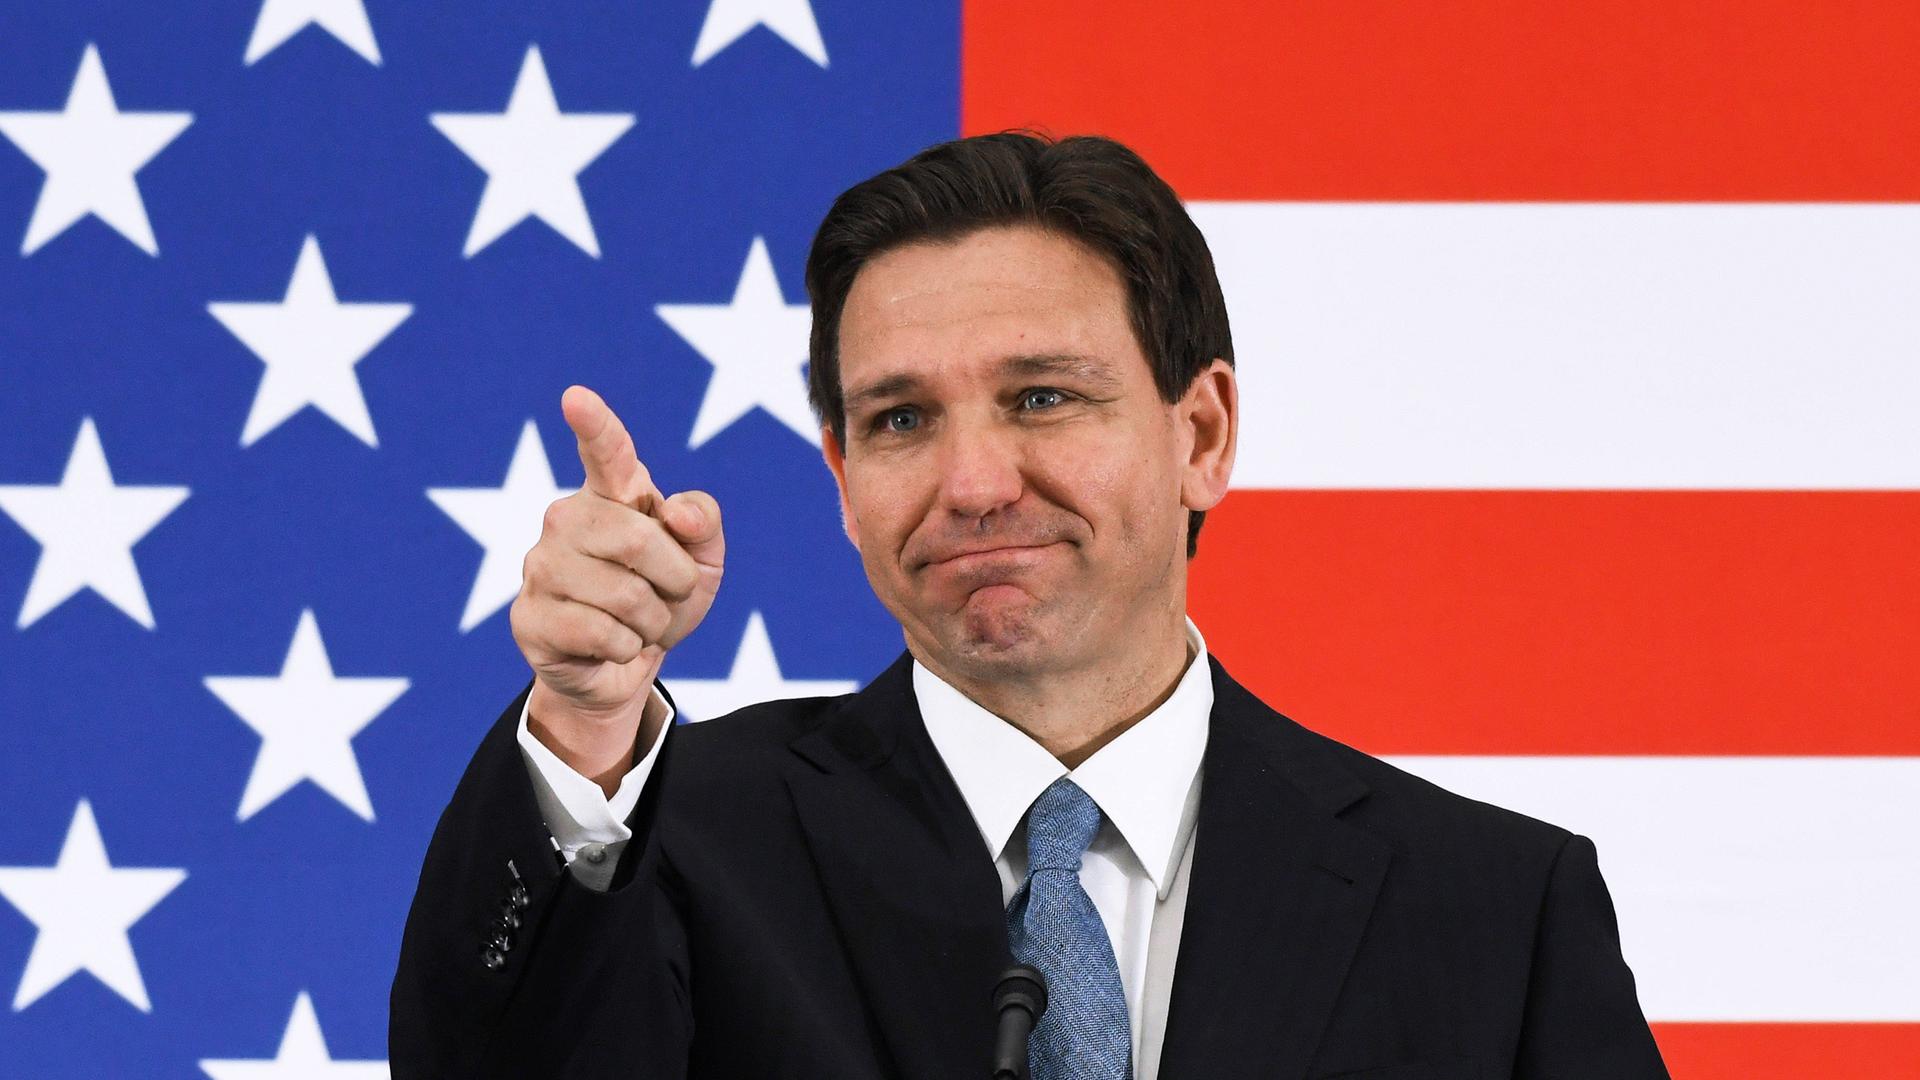 Der Gouverneur von Florida ist Ron DeSantis. Er steht vor einer US-Flagge und zeigt nach vorne.